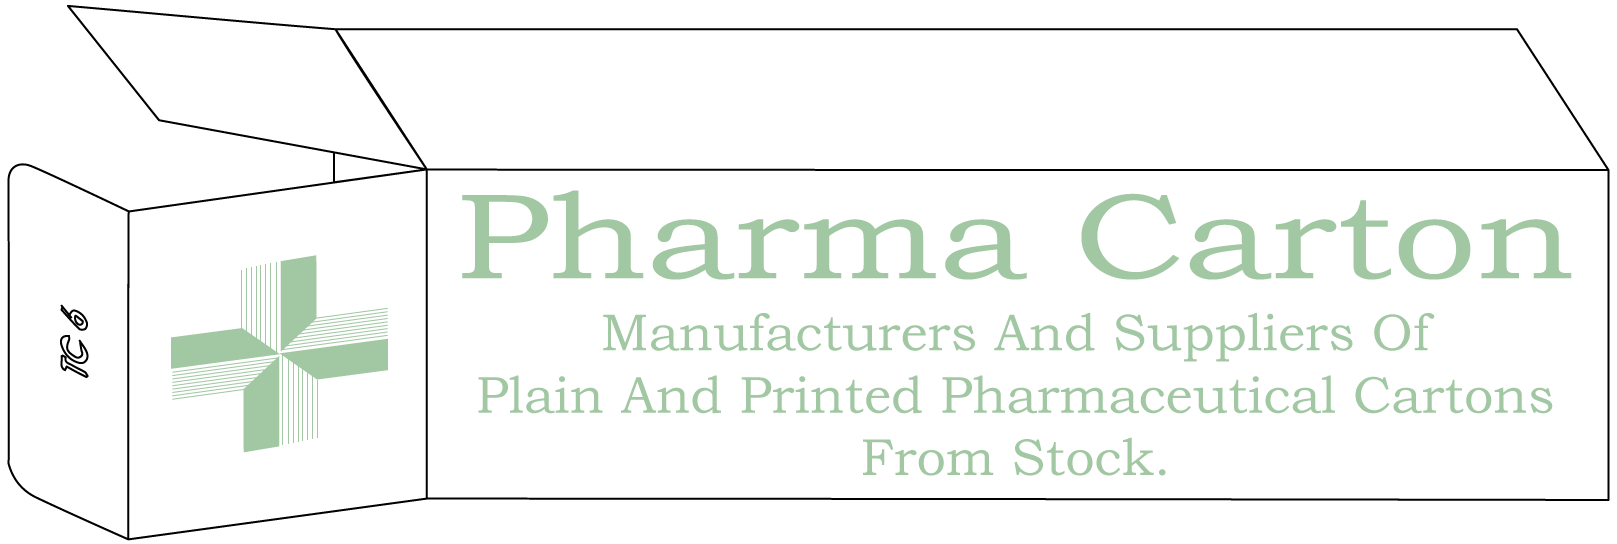 Pharma Carton ltd logo